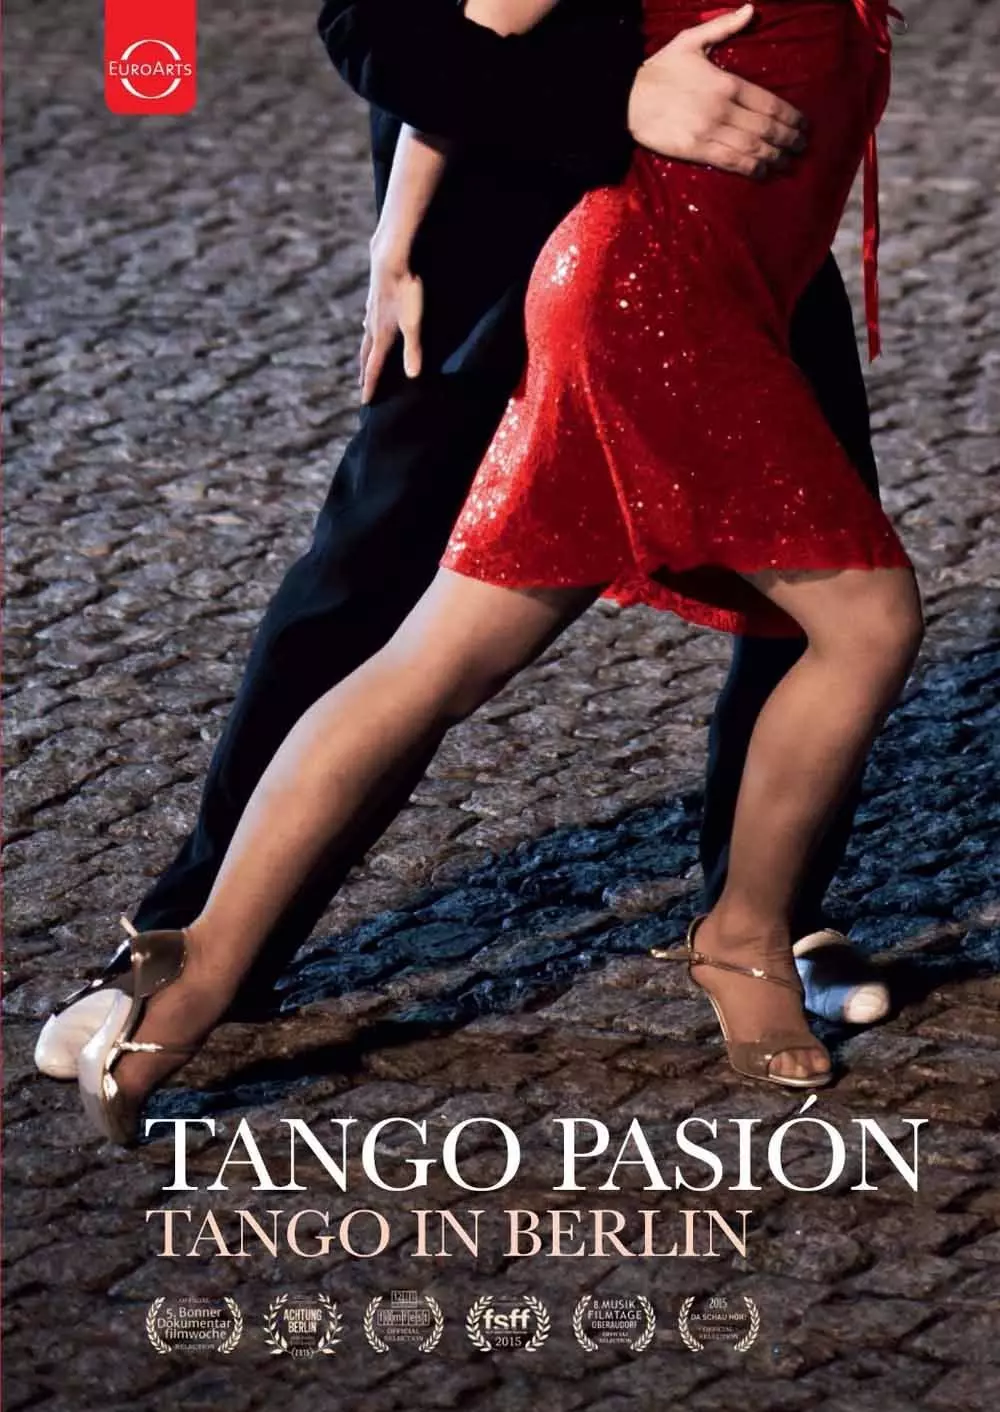 Tango Pasión - A film about Tango in Berlin